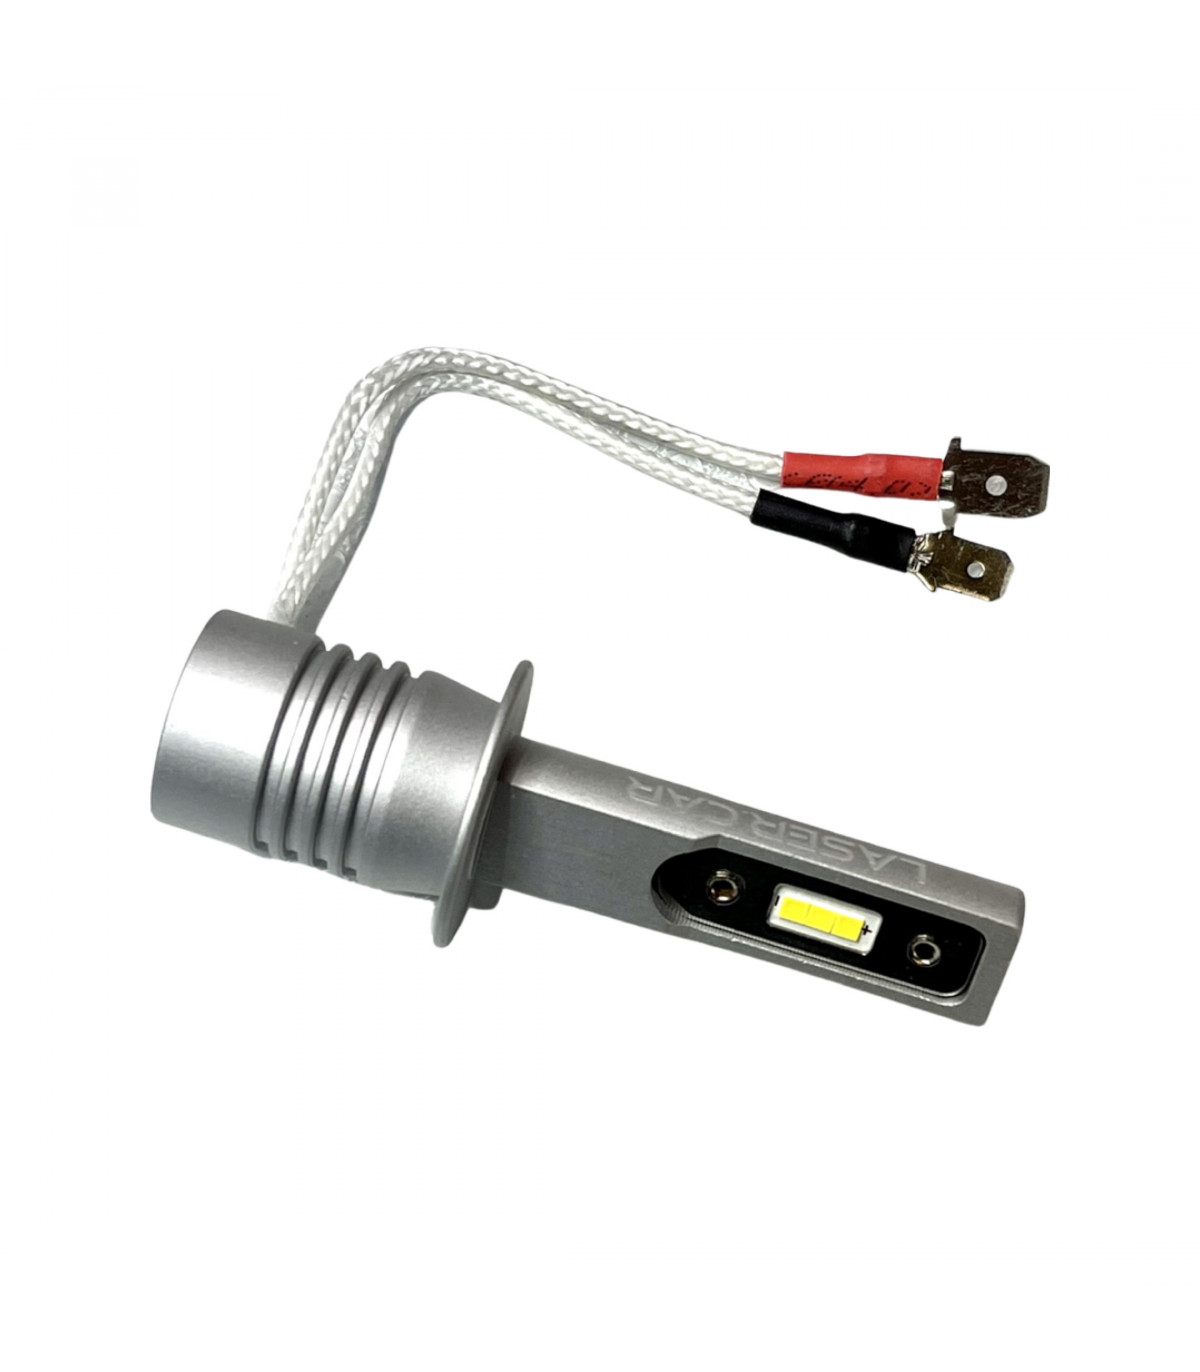 1 Ampoule LED H1 pour PHARE LENTICULAIRE | Lumière Puissante à 360° 6000  Lumens | Conversion de HALOGÈNE H1 à LED | CANbus, Plug & Play